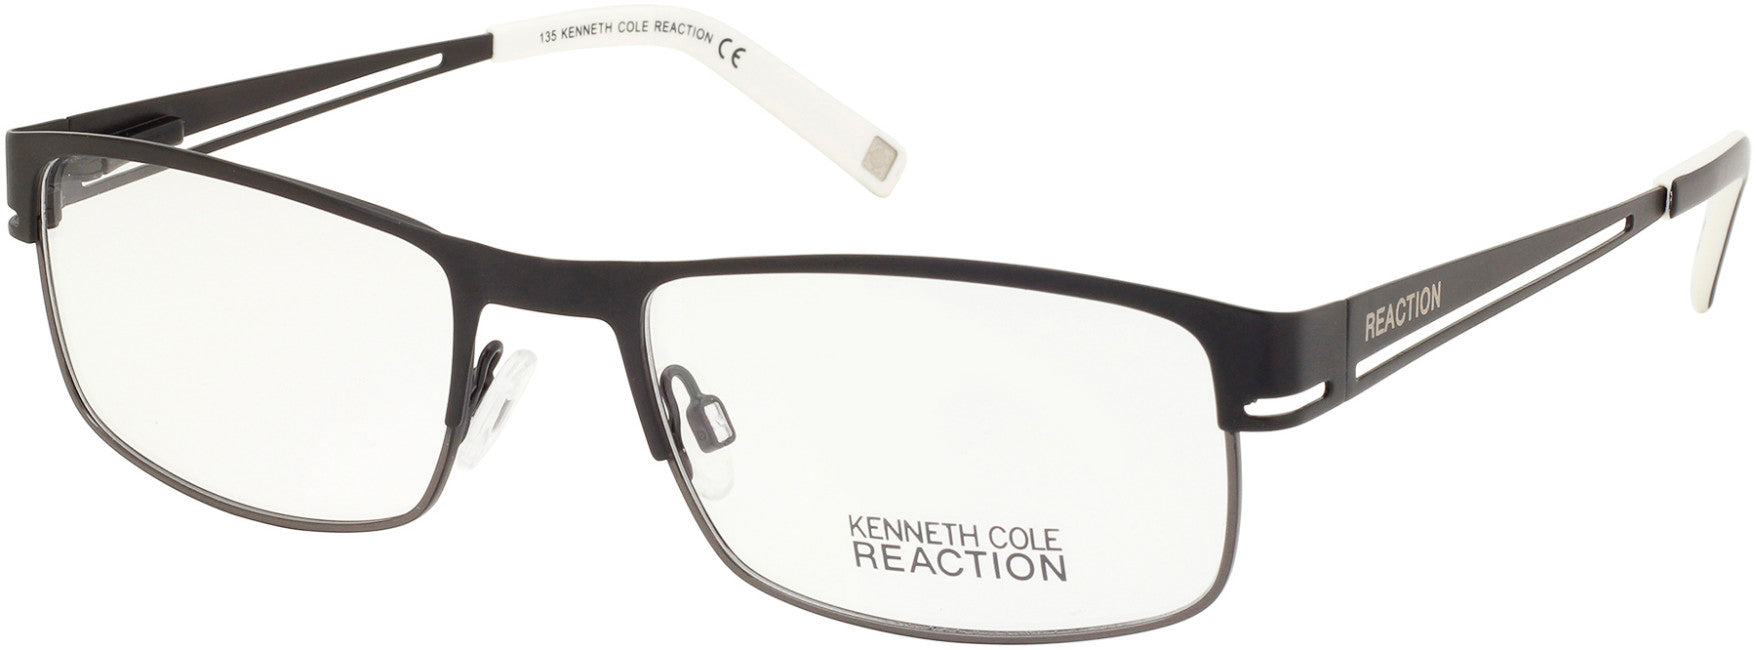 Kenneth Cole New York,Kenneth Cole Reaction KC0697 Eyeglasses 002-002 - Matte Black